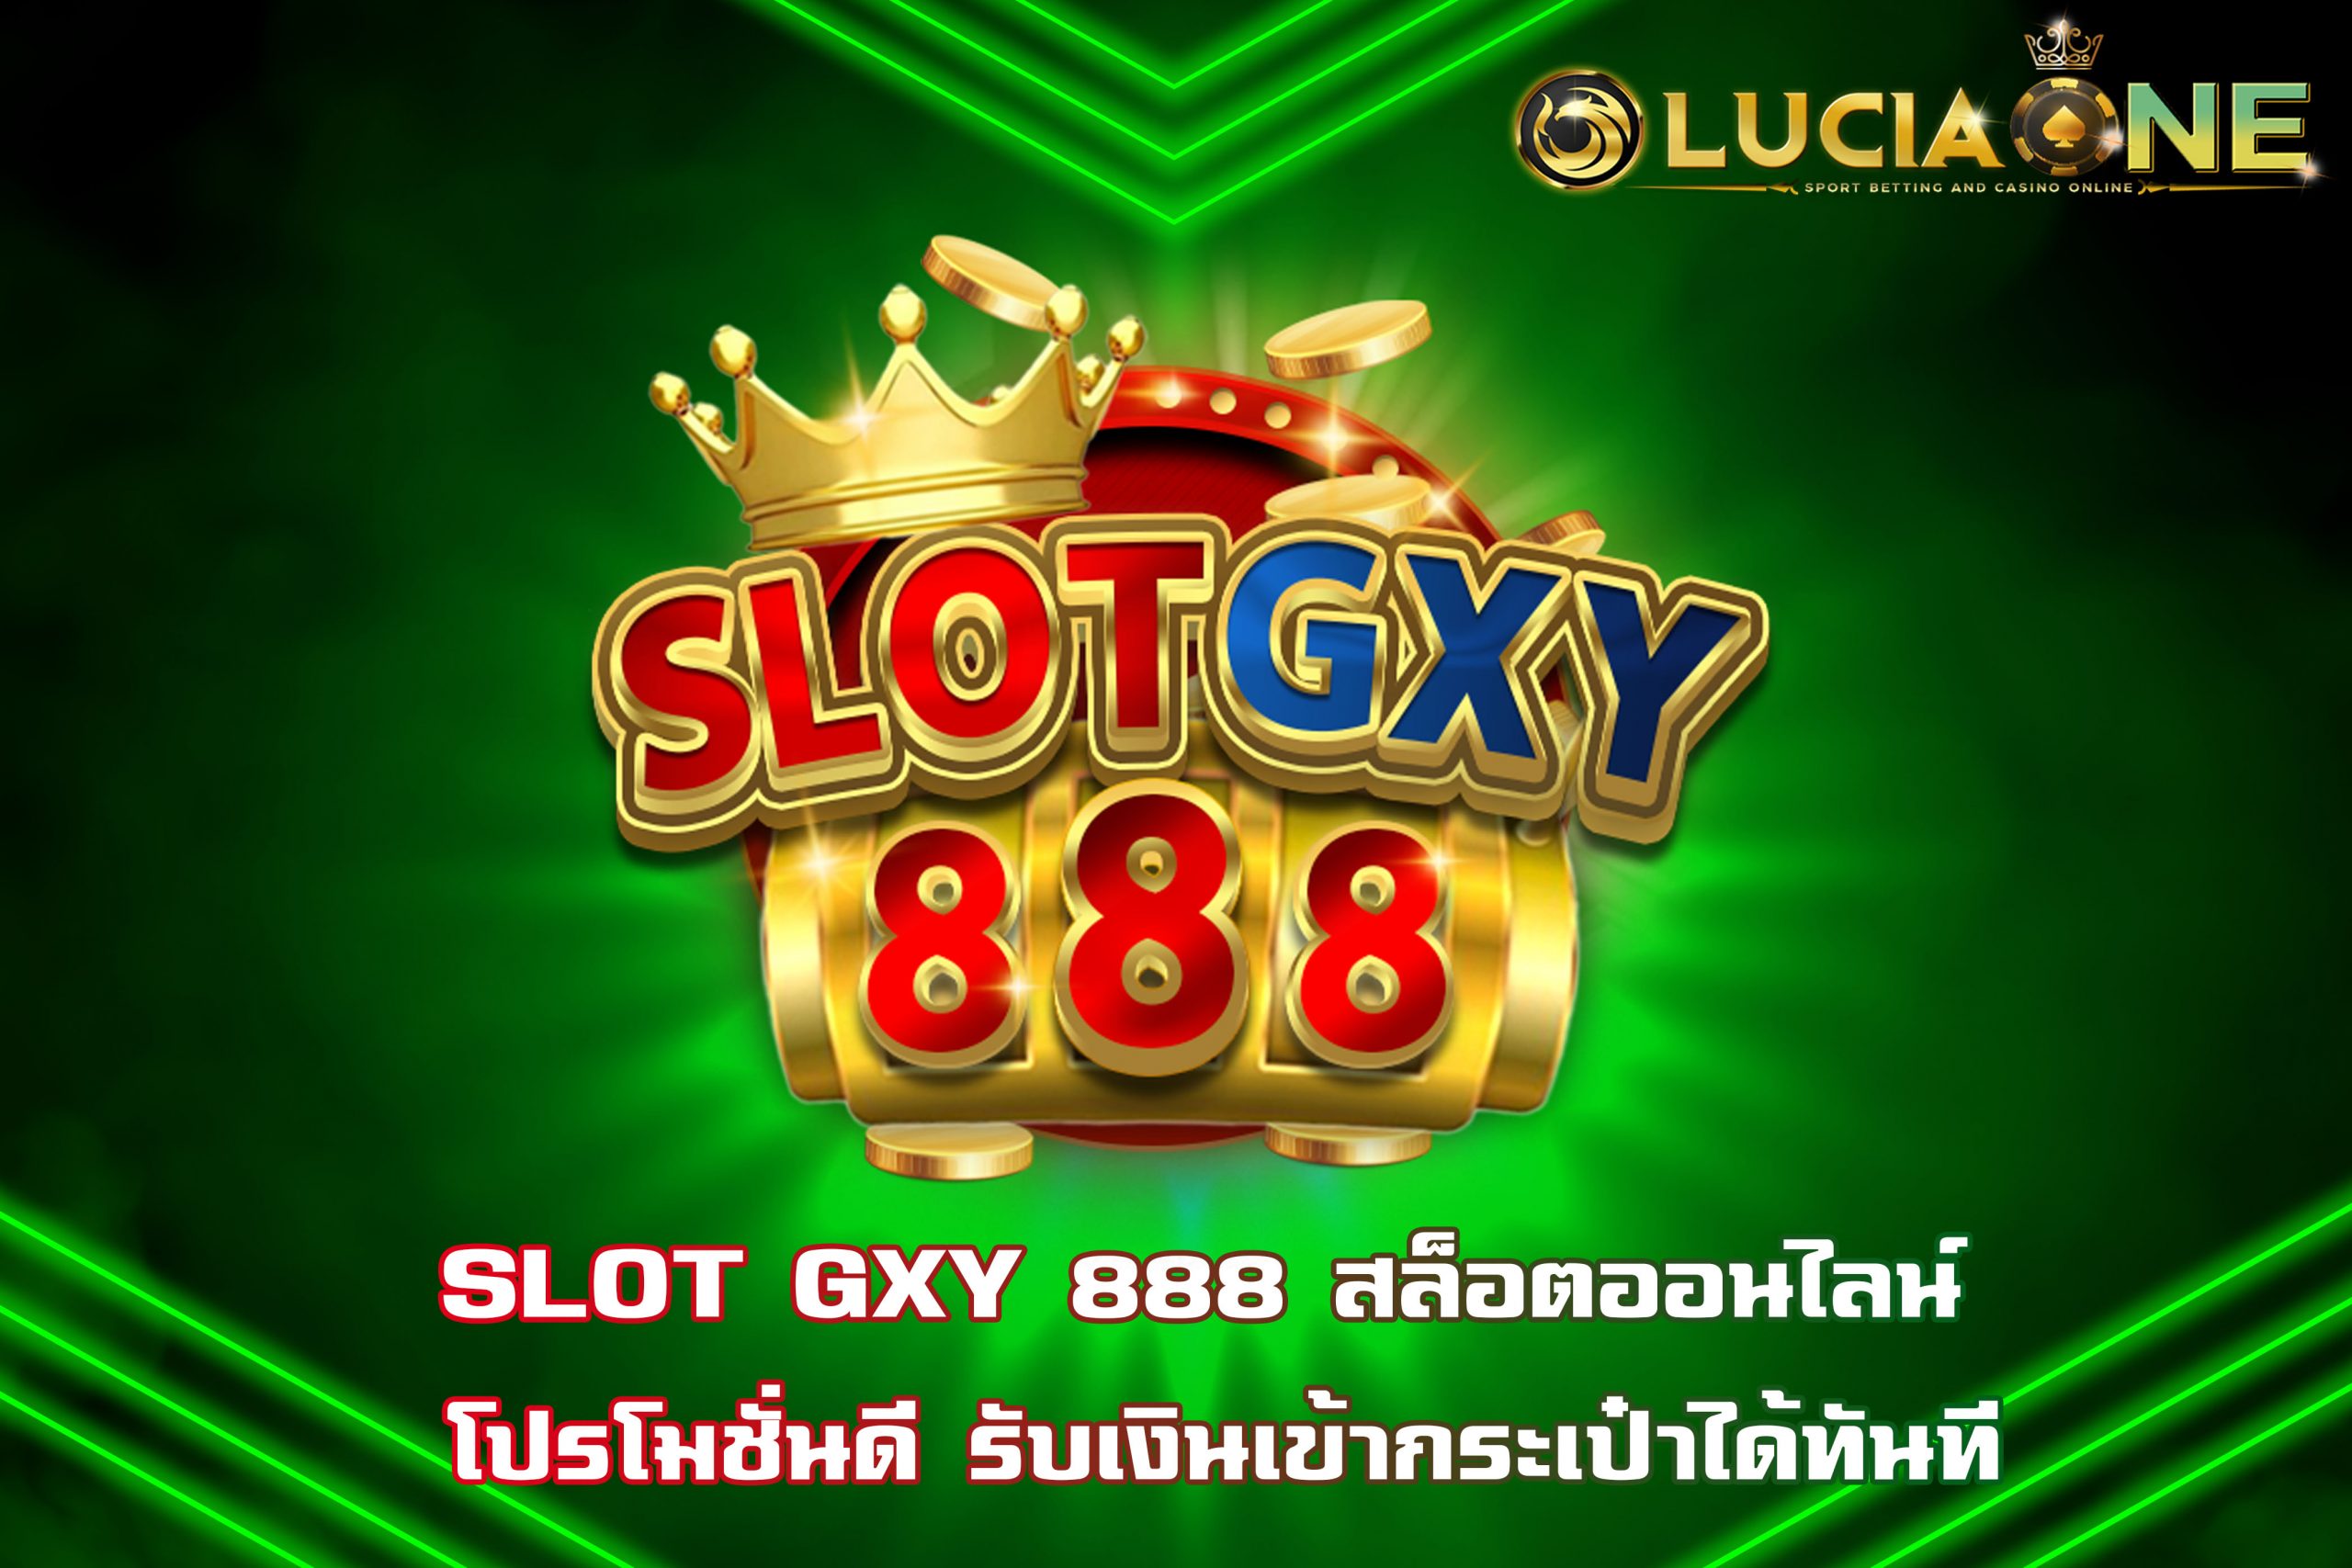 SLOT GXY 888 สล็อตออนไลน์ โปรโมชั่นดี รับเงินเข้ากระเป๋าได้ทันที